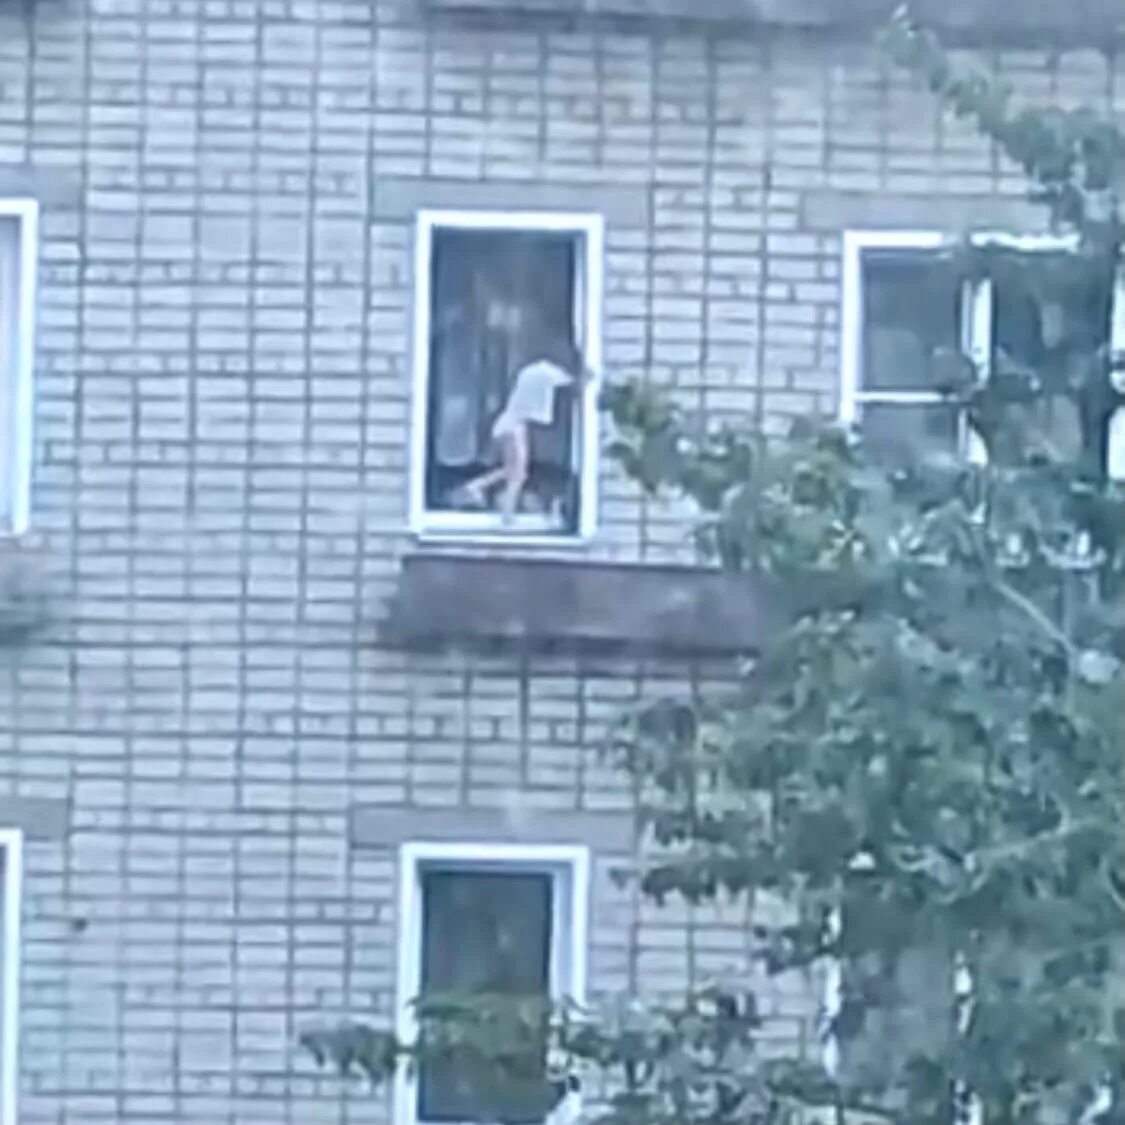 Сонник выпал из окна. Ребенок на карнизе 8 этажа. Человек у окна.